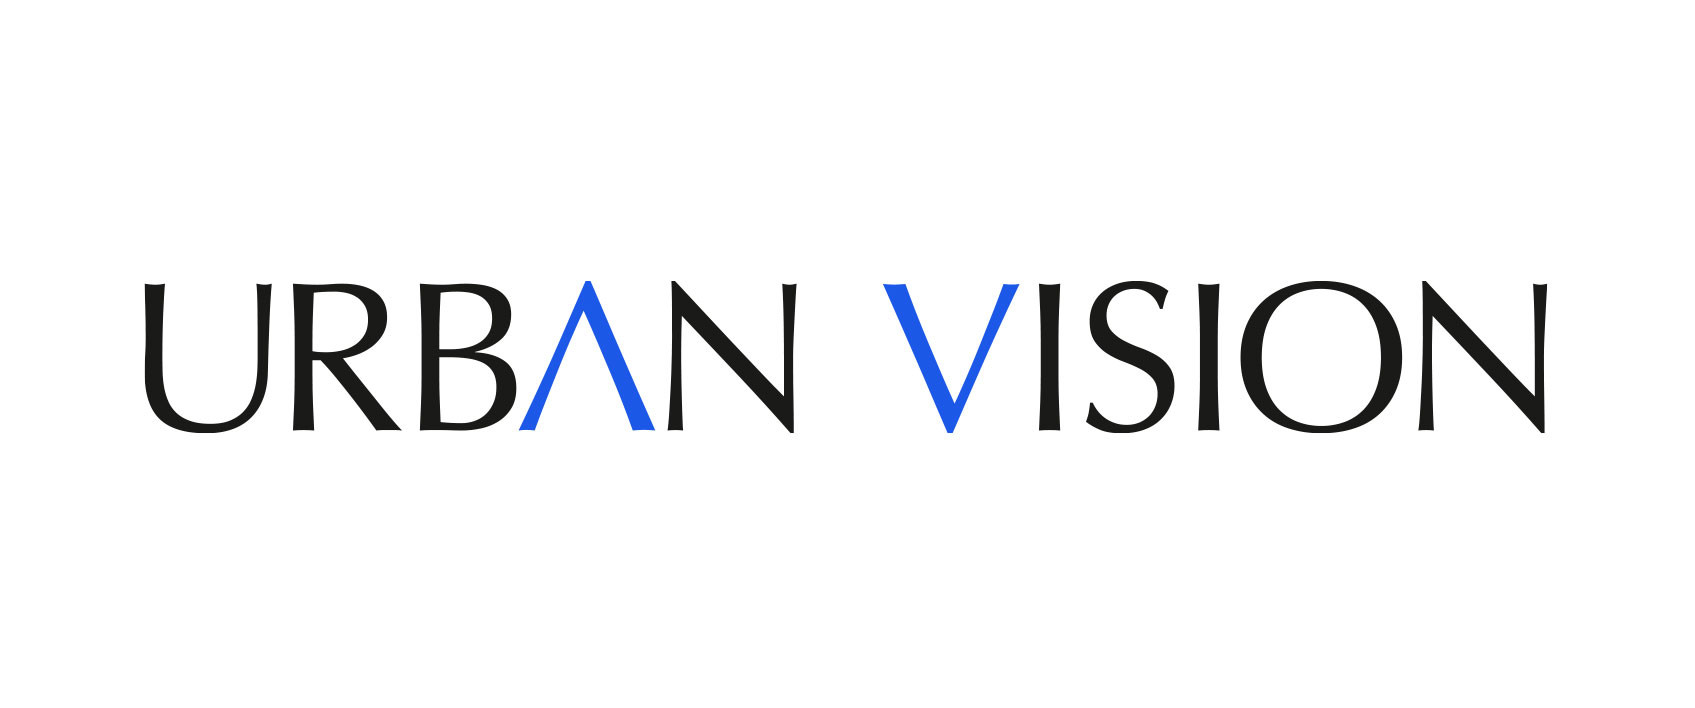 Urban Vision lancia 2 campagne contro la violenza di genere e domani presenta YUBIQA con Autostrade per l’Italia